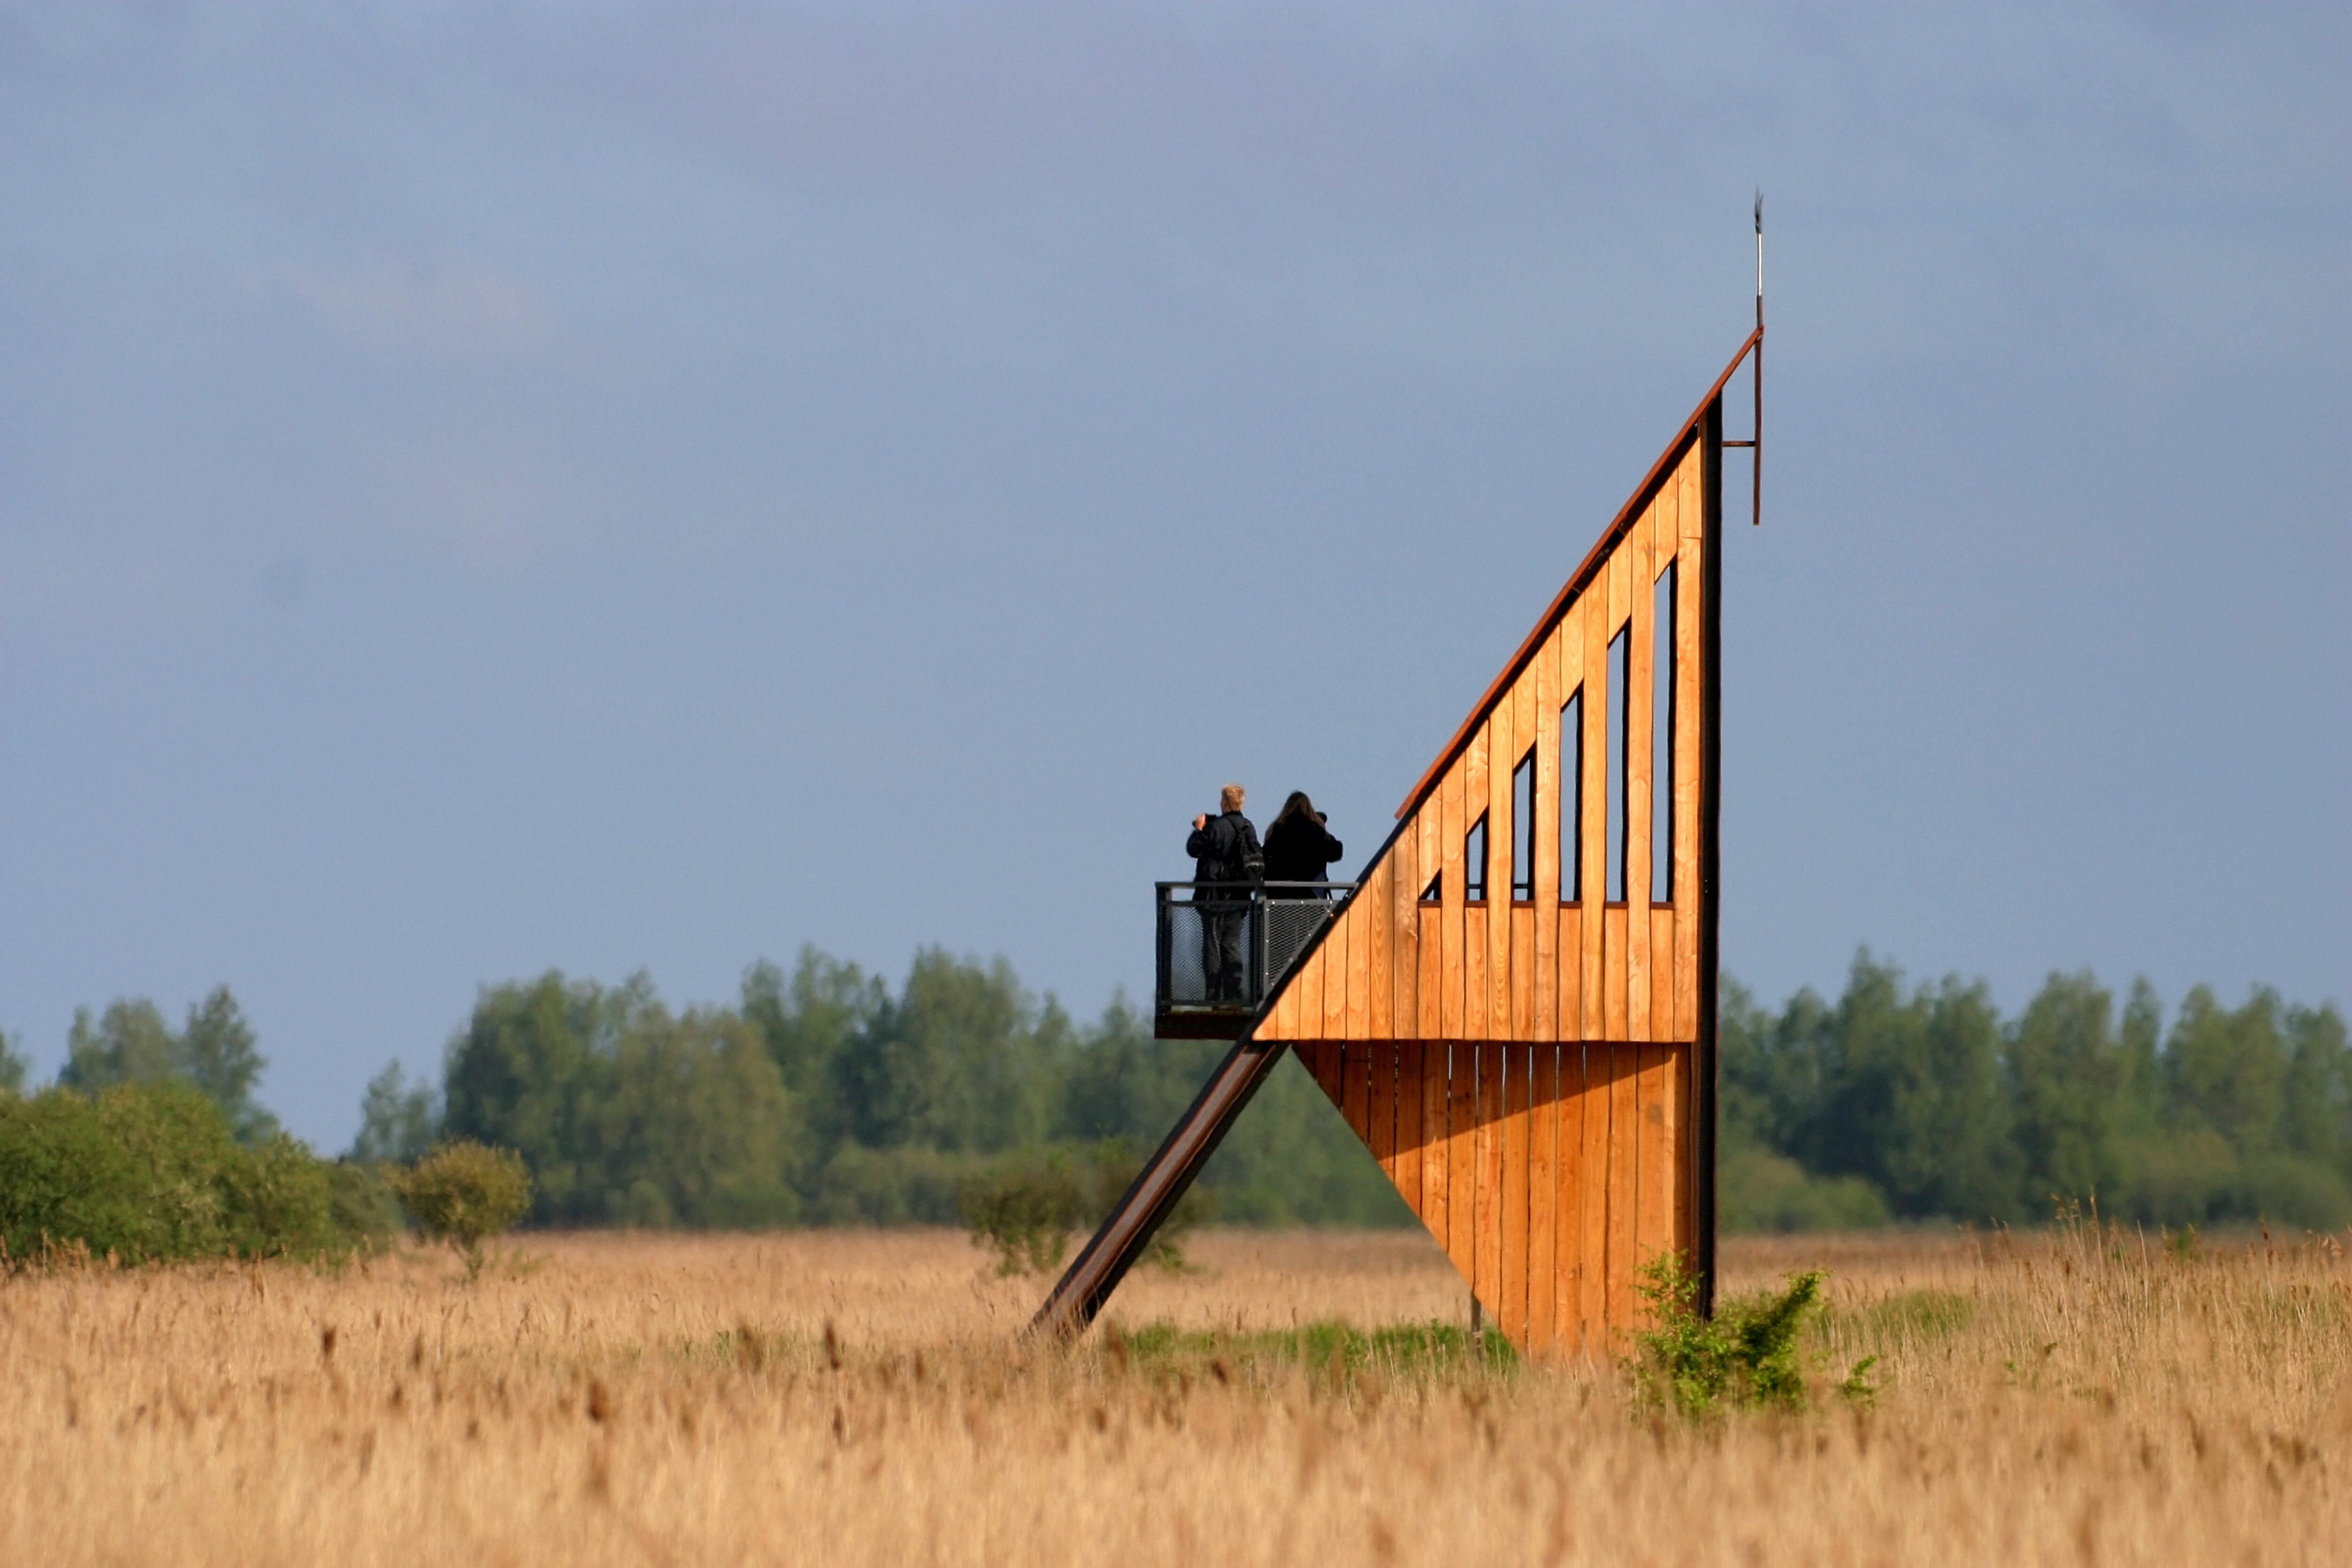 Uno de los puntos de observación de aves en el parque nacional Lauwersmeer (Países Bajos).